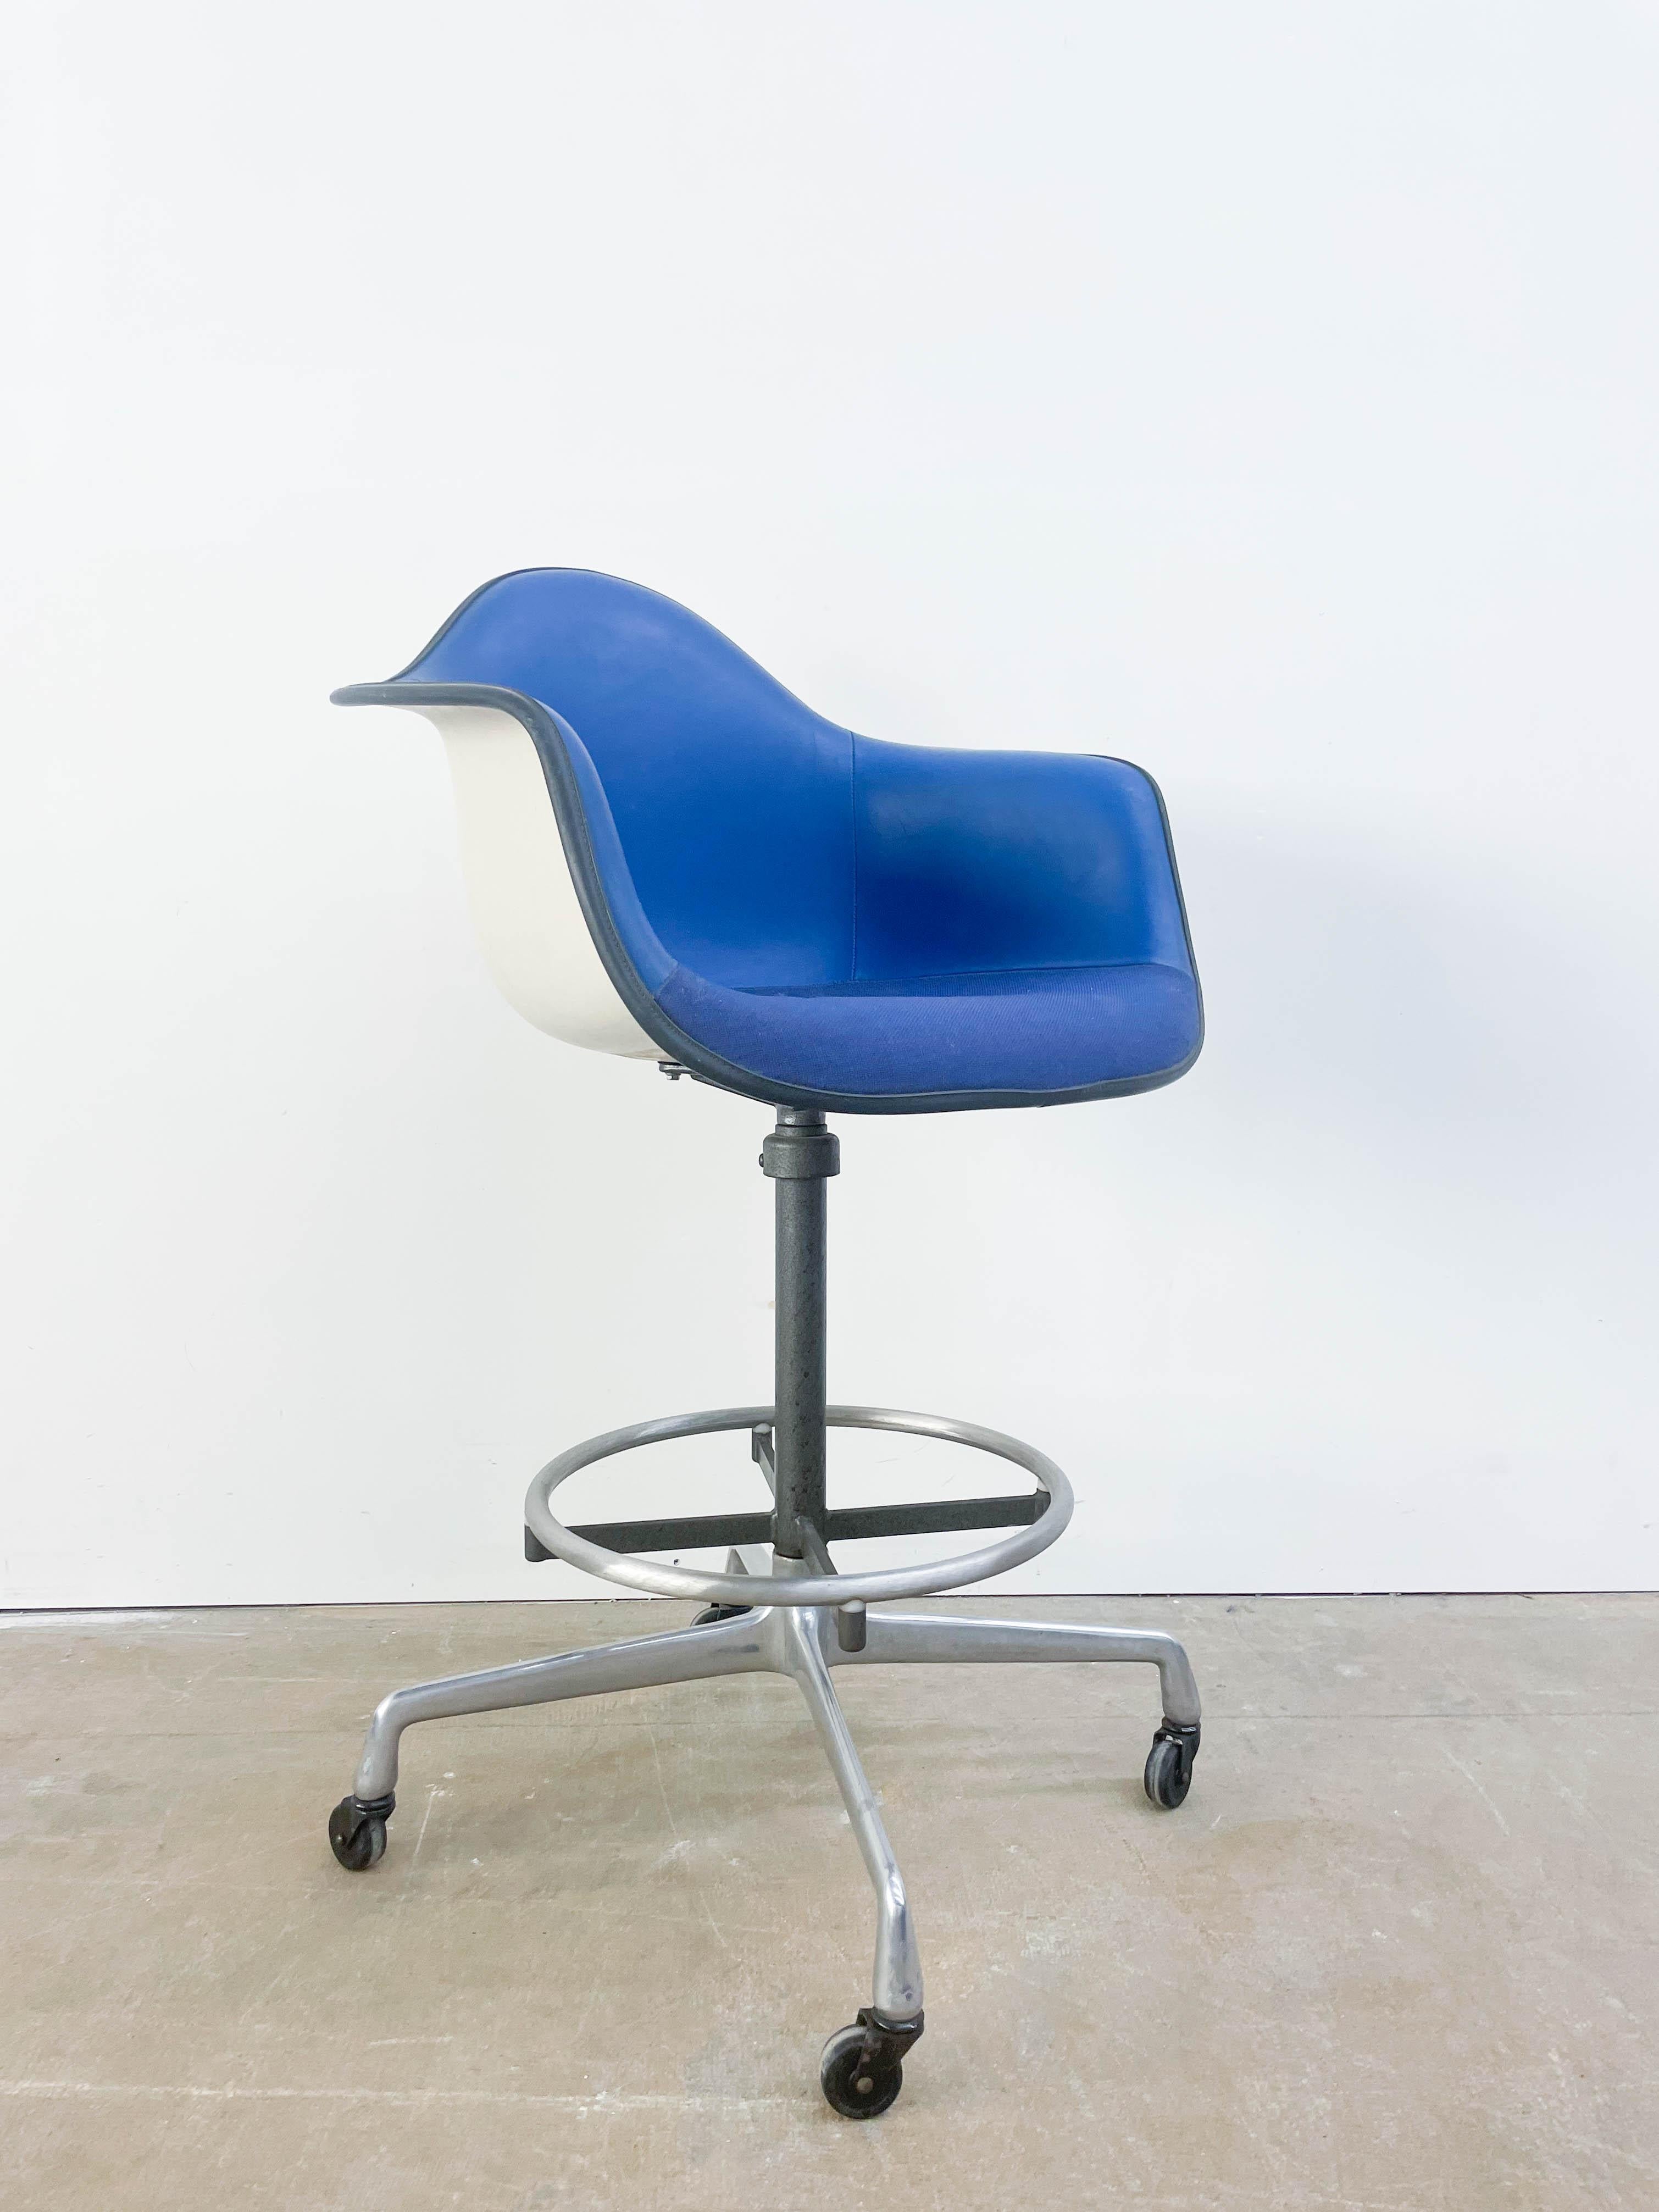 Chaise Eames rembourrée en bleu sur une grande base pivotante design avec roulettes. Il s'agit d'une combinaison inhabituelle et accrocheuse qui allie confort et fonctionnalité.
  